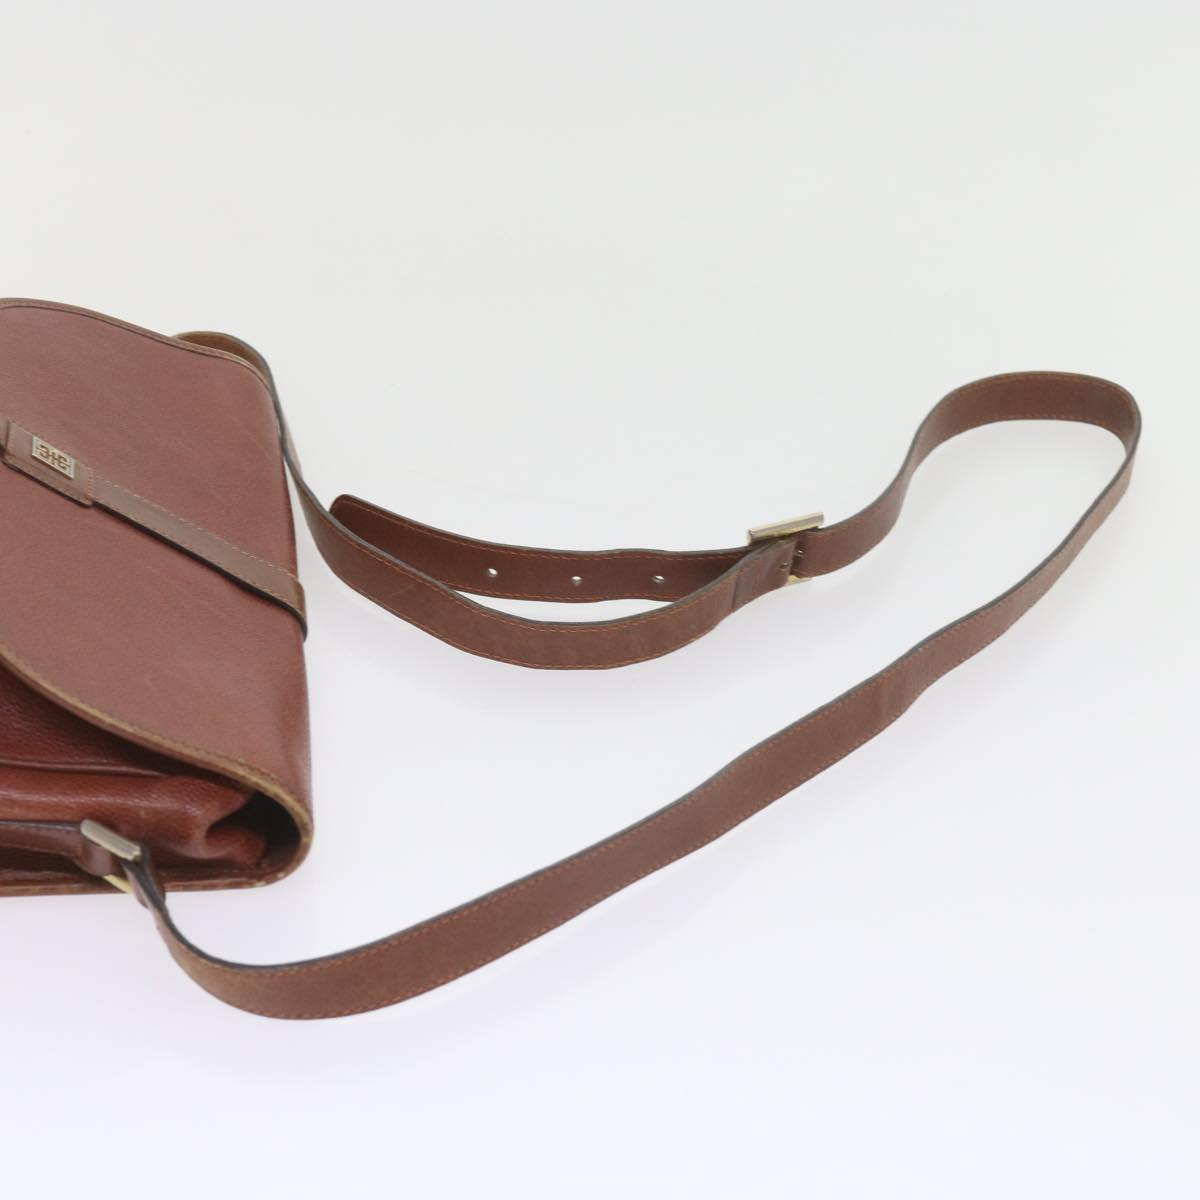 GIVENCHY Shoulder Bag Leather 3Set Black Brown Auth bs9363